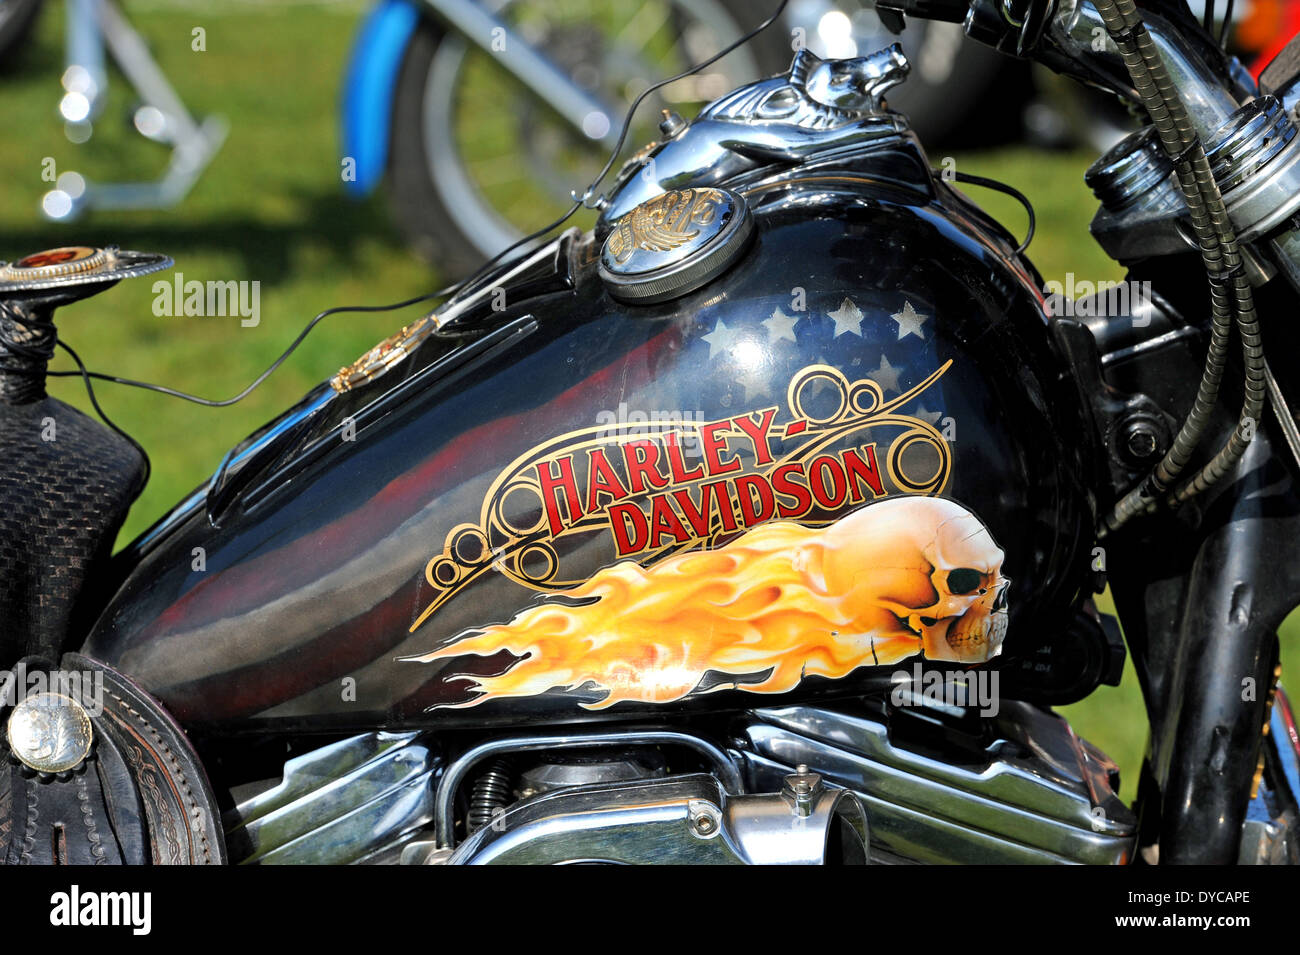 Moto moto Harley Davidson peint du réservoir de carburant Banque D'Images